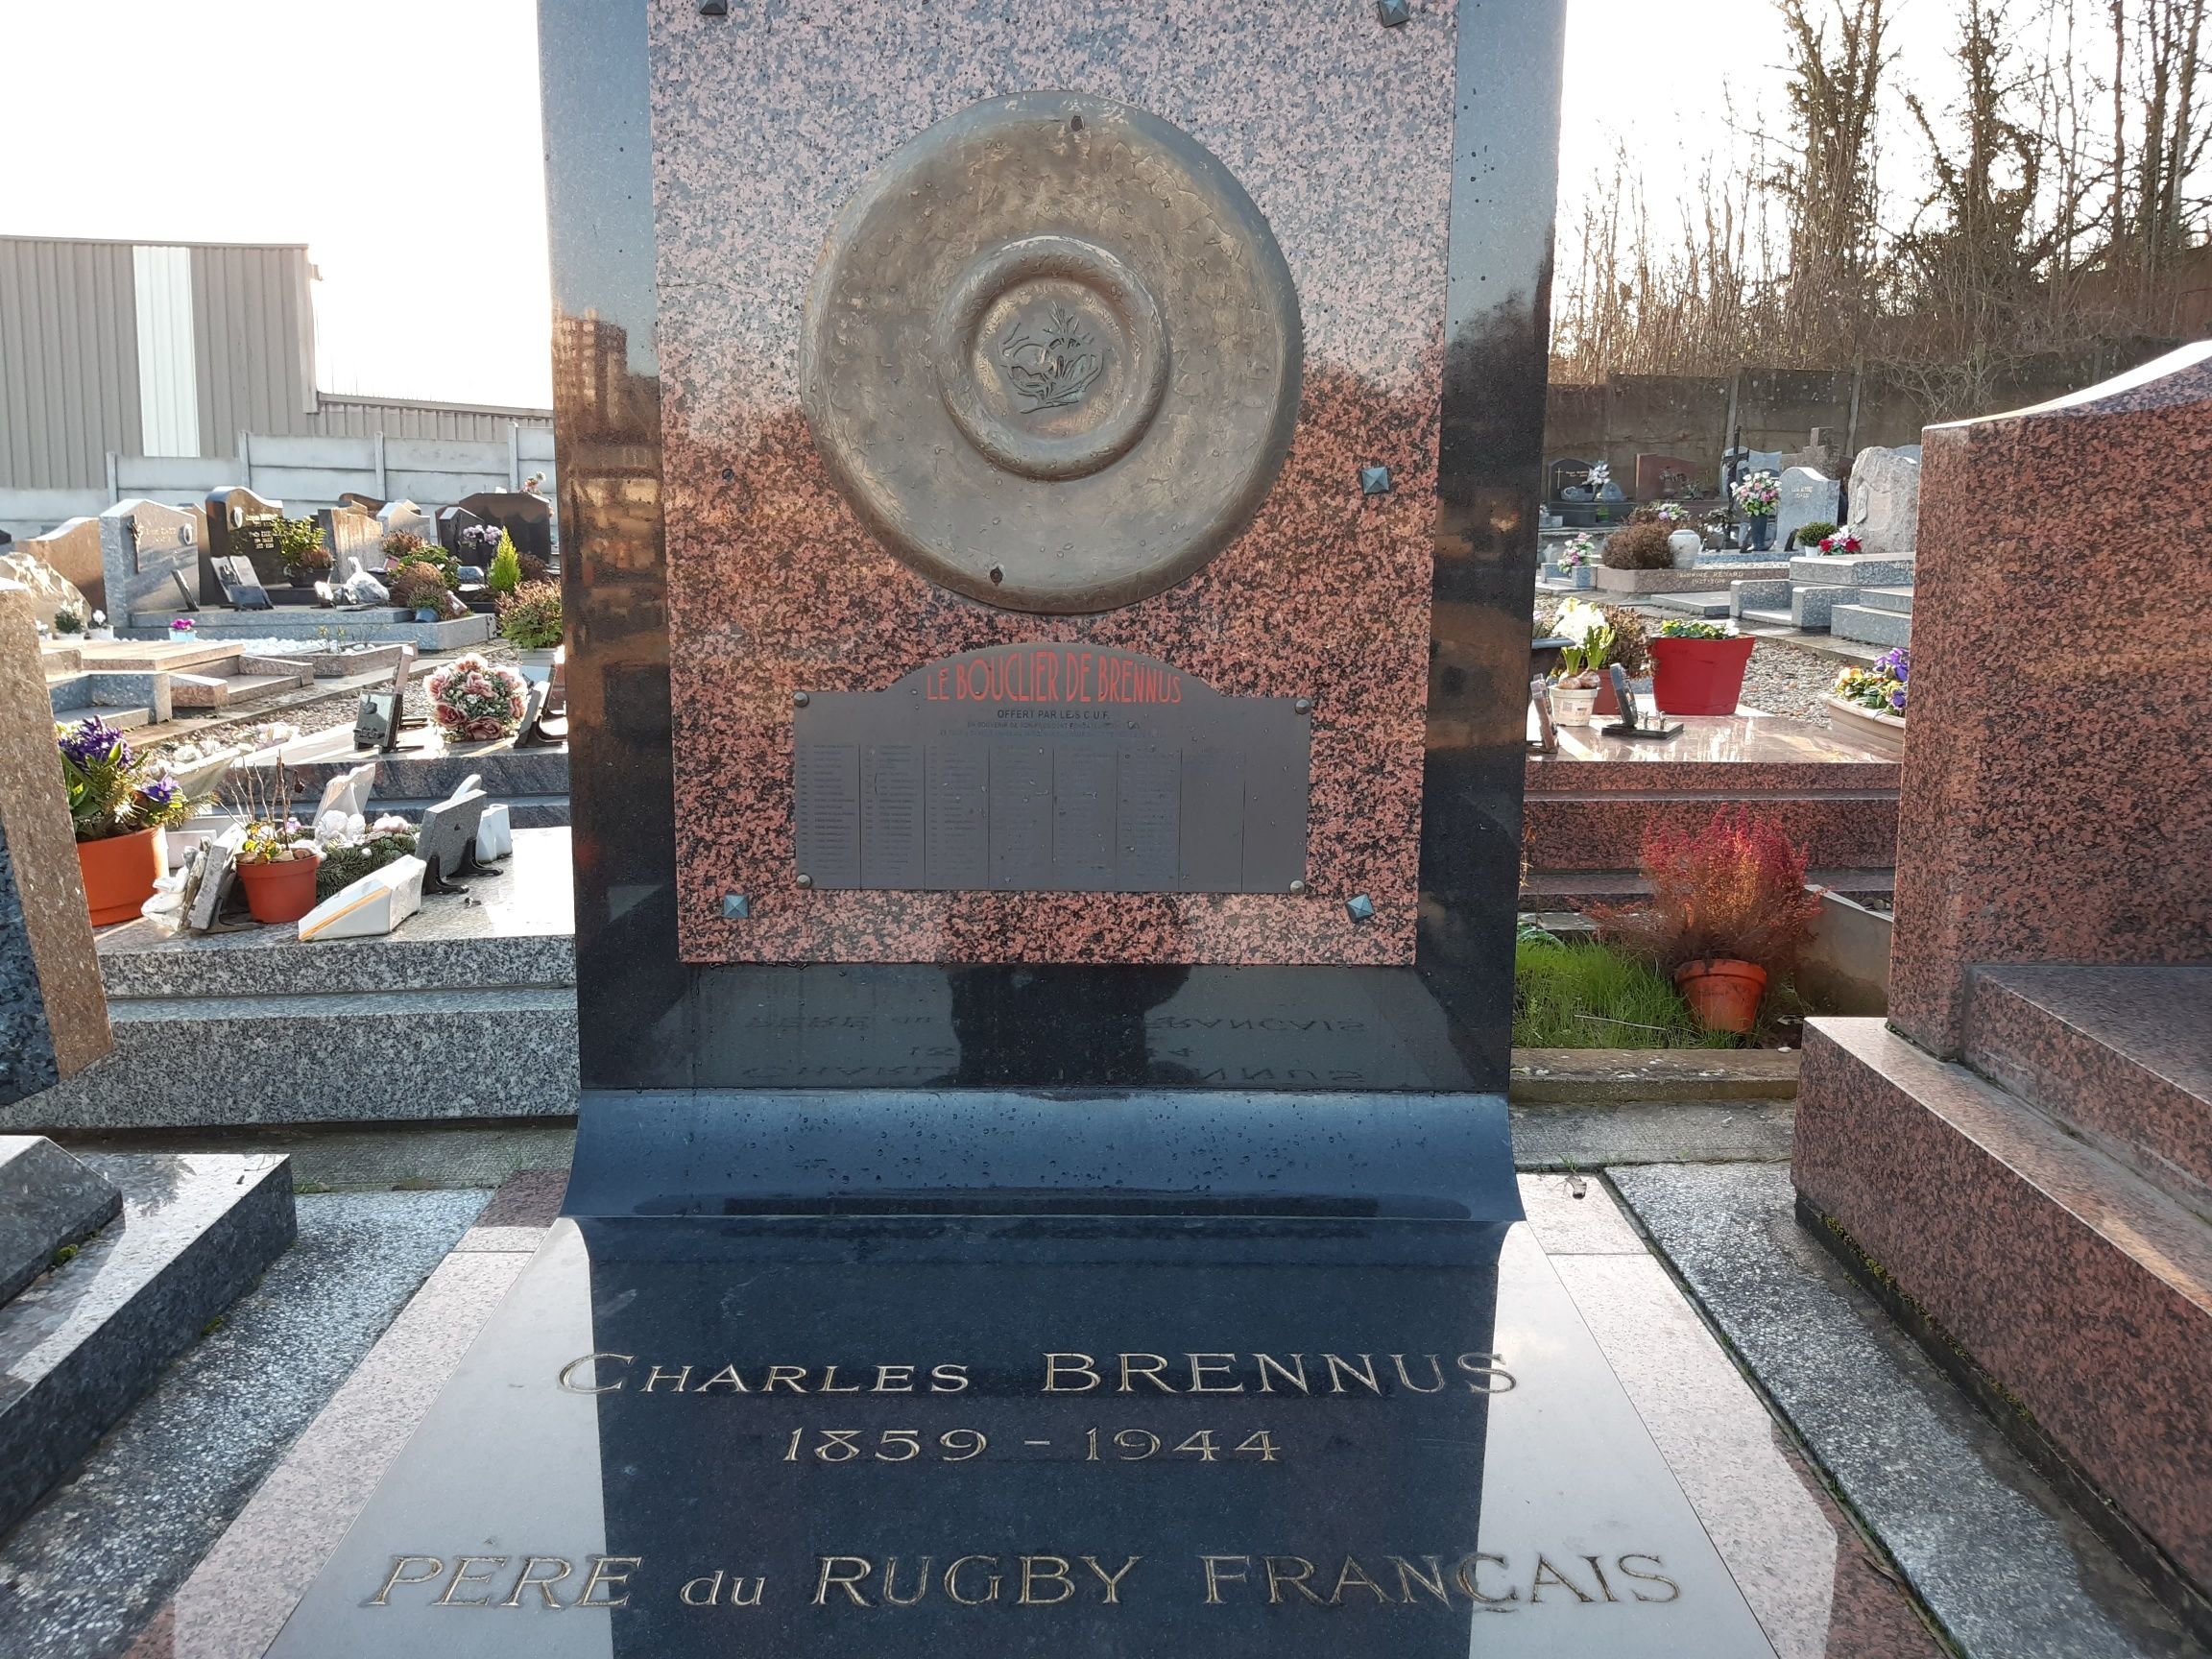 Charles Brennus, créateur du bouclier levé chaque année par le vainqueur du Championnat de France de rugby, est enterré à Franconville, dans le Val-d'Oise. LP/Christophe Lefèvre